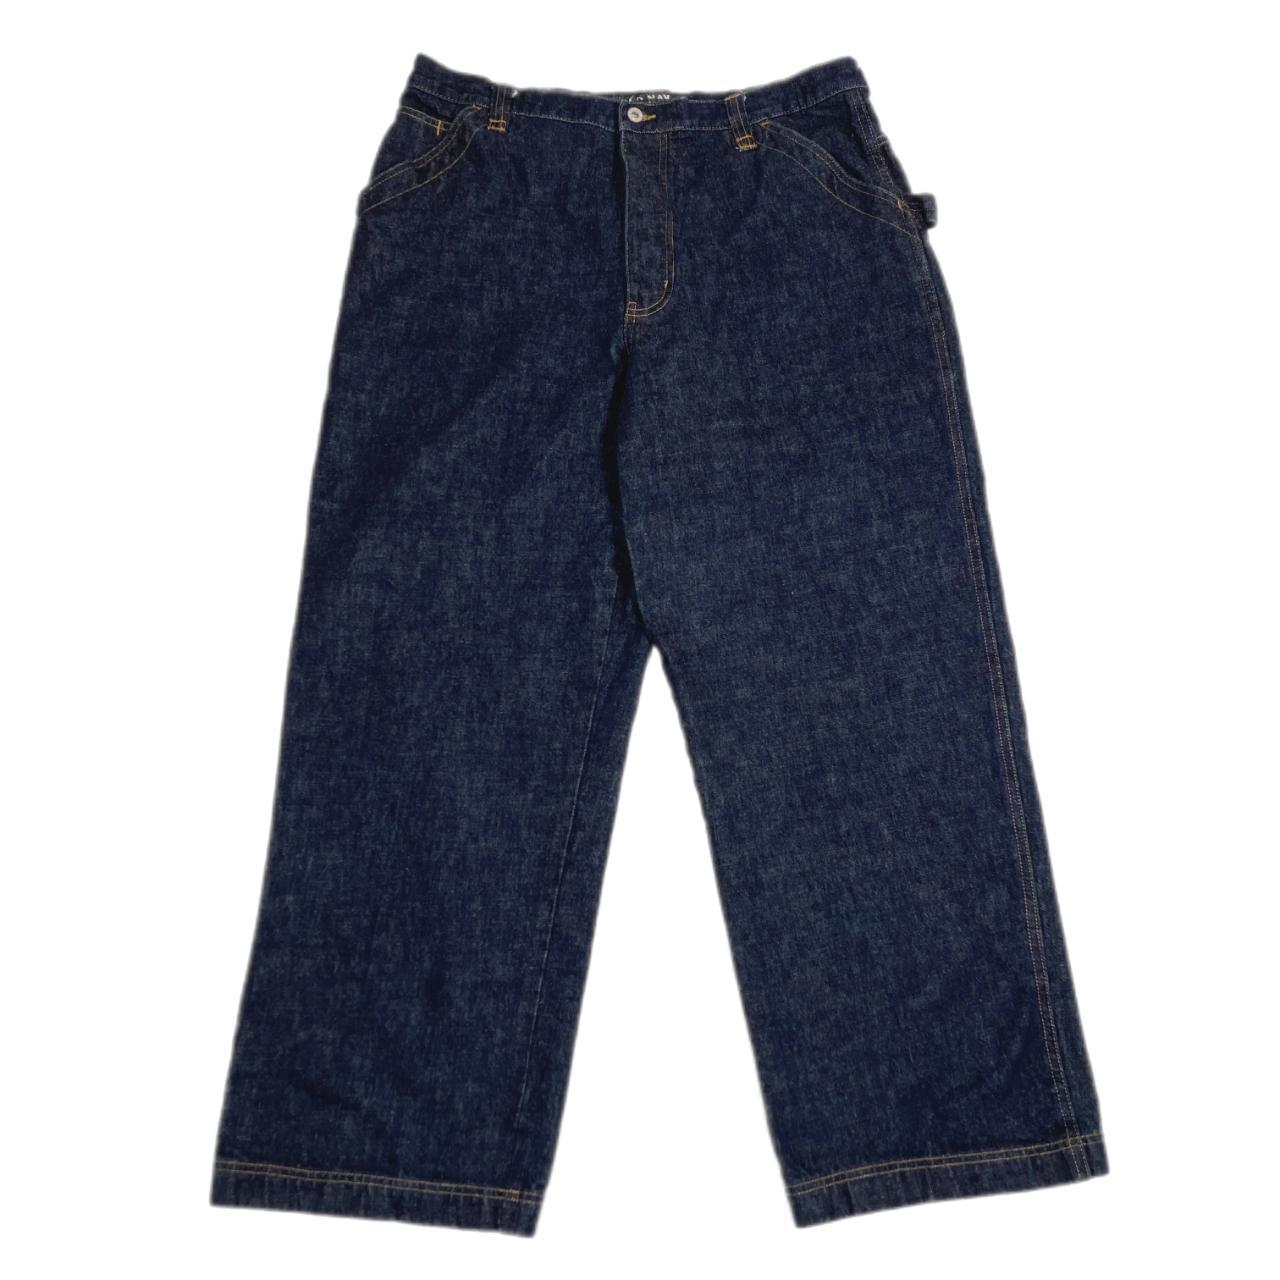 Vintage Old Navy baggy carpenter jeans • Size... - Depop